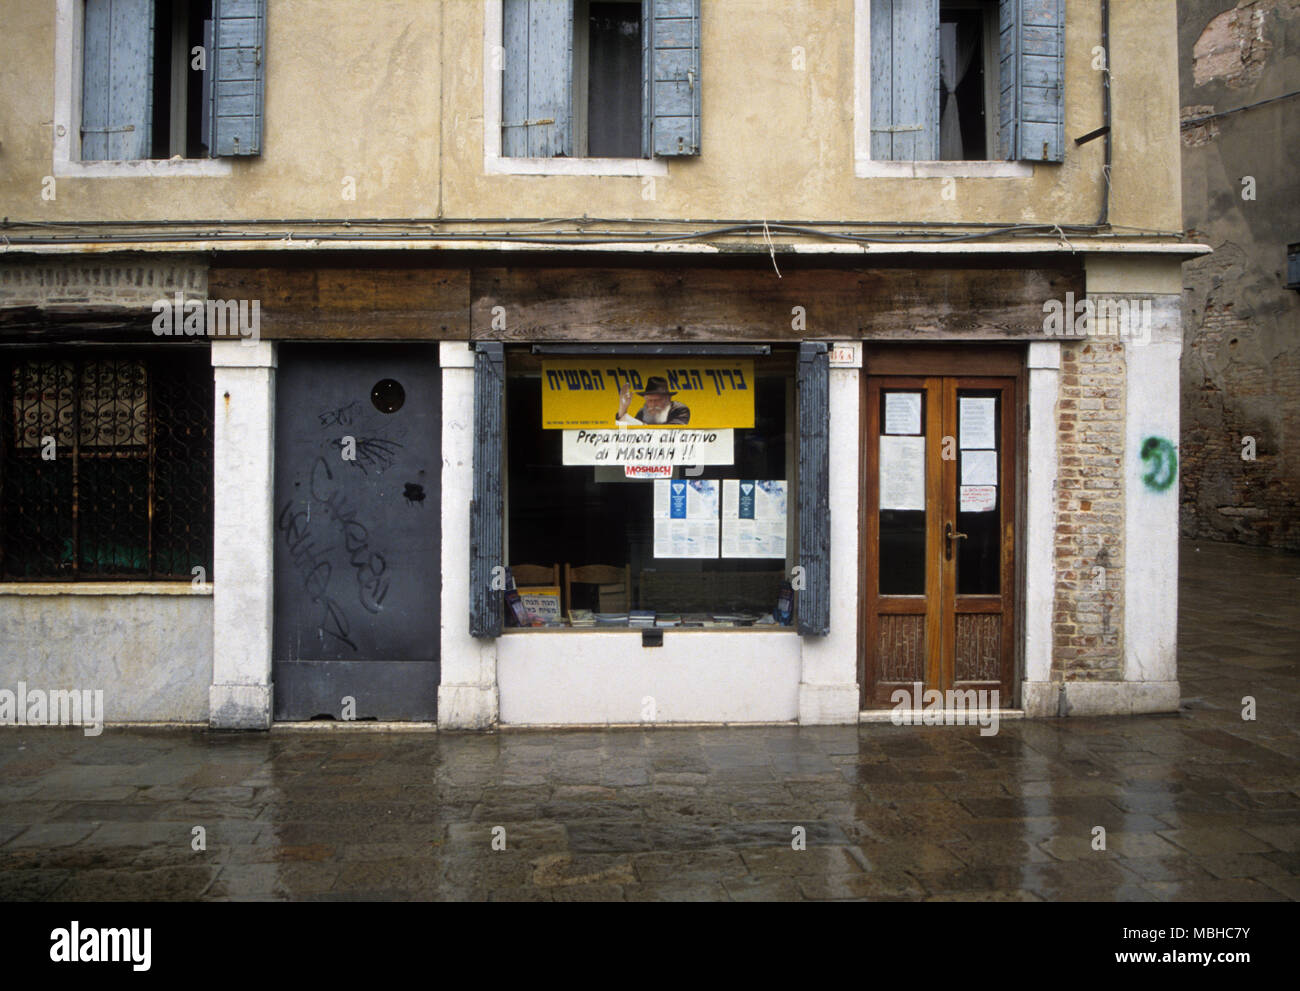 Jewish premises in Venice's Ghetto area Stock Photo